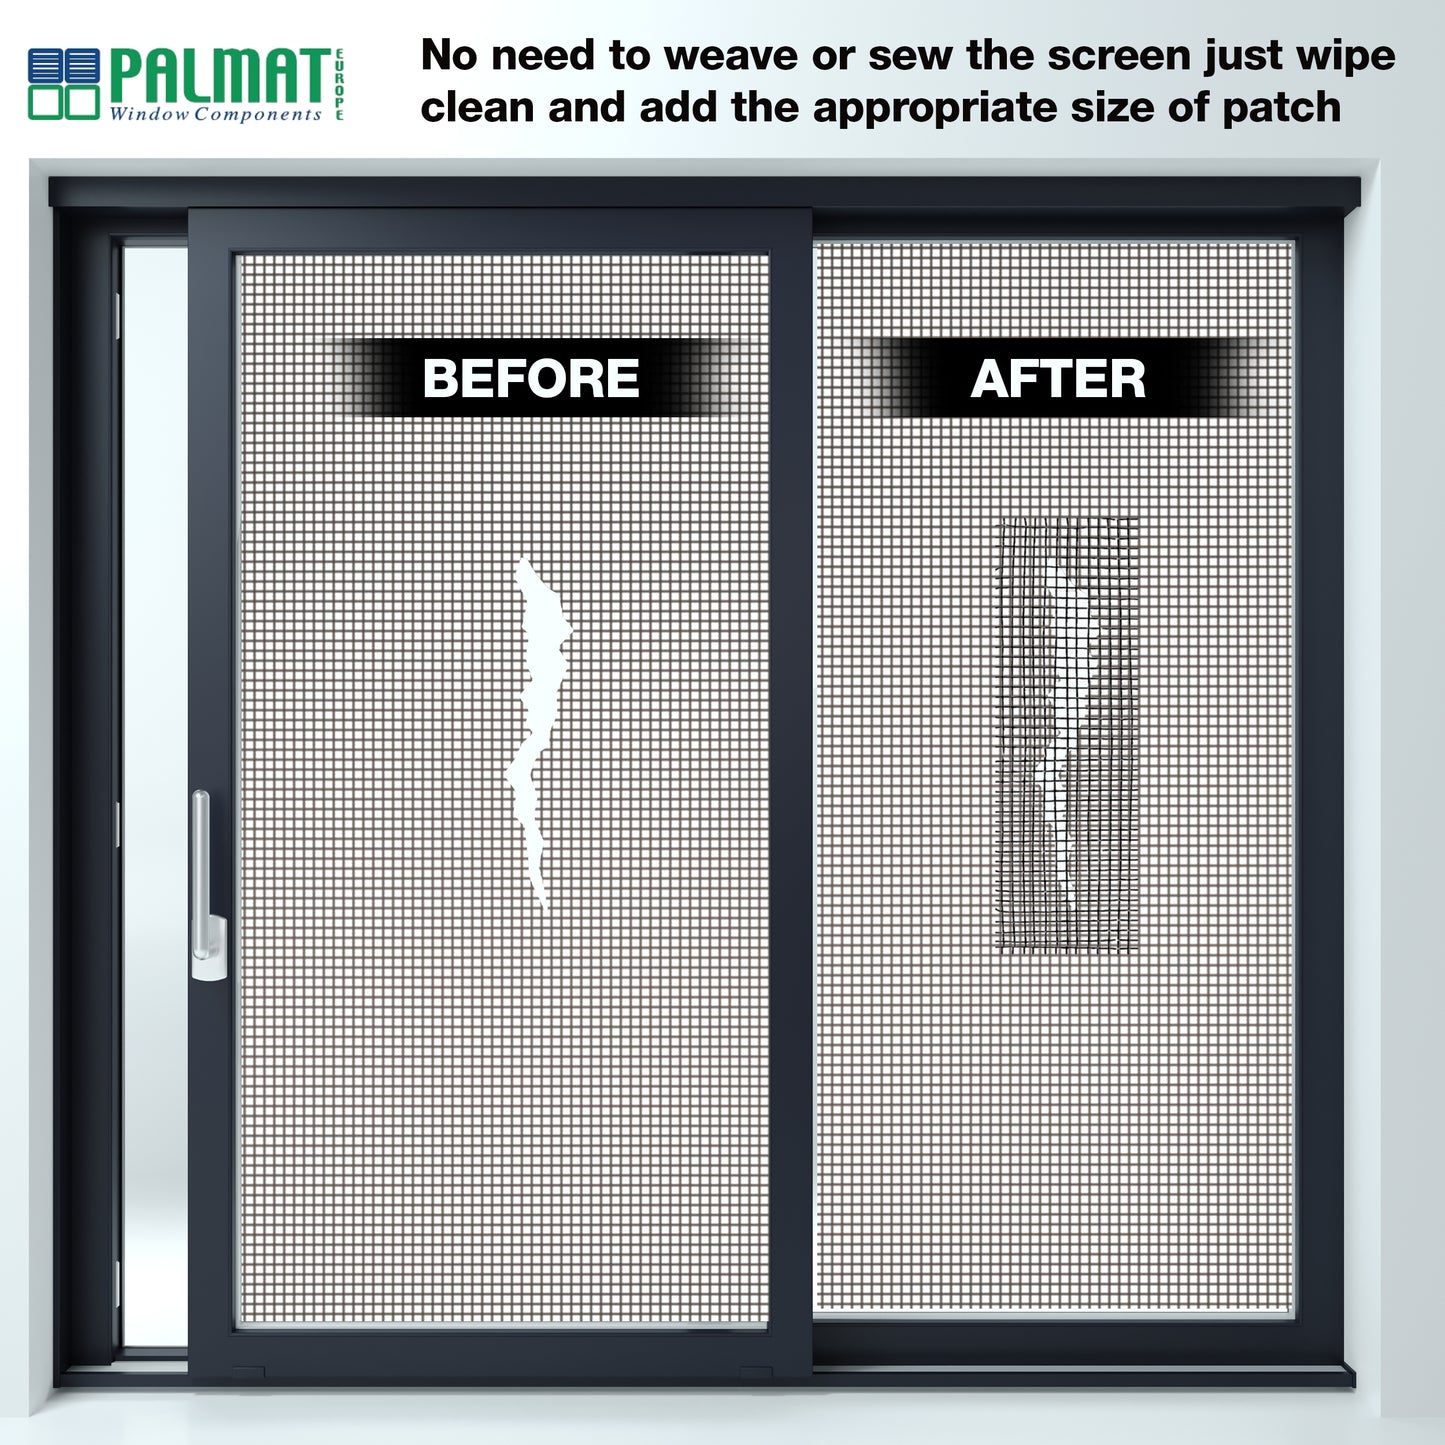 PALMAT - Kit de Réparation de Moustiquaires - Pour réparer les fissures et les perforations instantanément, Imperméable, Résistant à la chaleur, Pour l'extérieur et l'intérieur, 5 x 200 cm